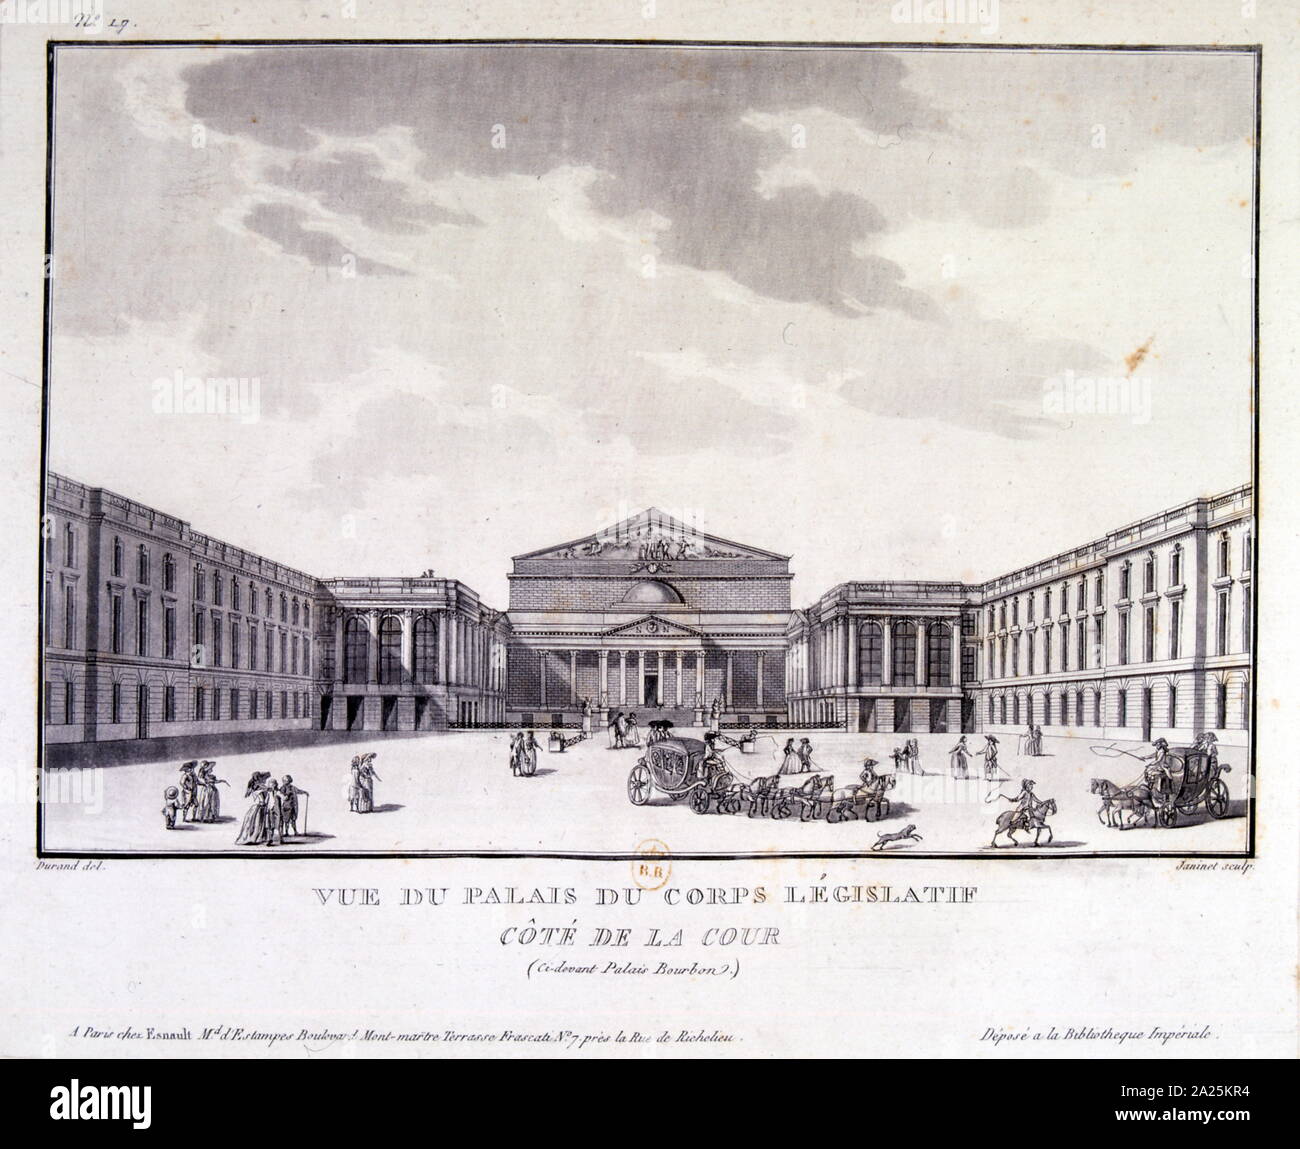 Illustration du corps législatif français à Paris, 1750 Banque D'Images